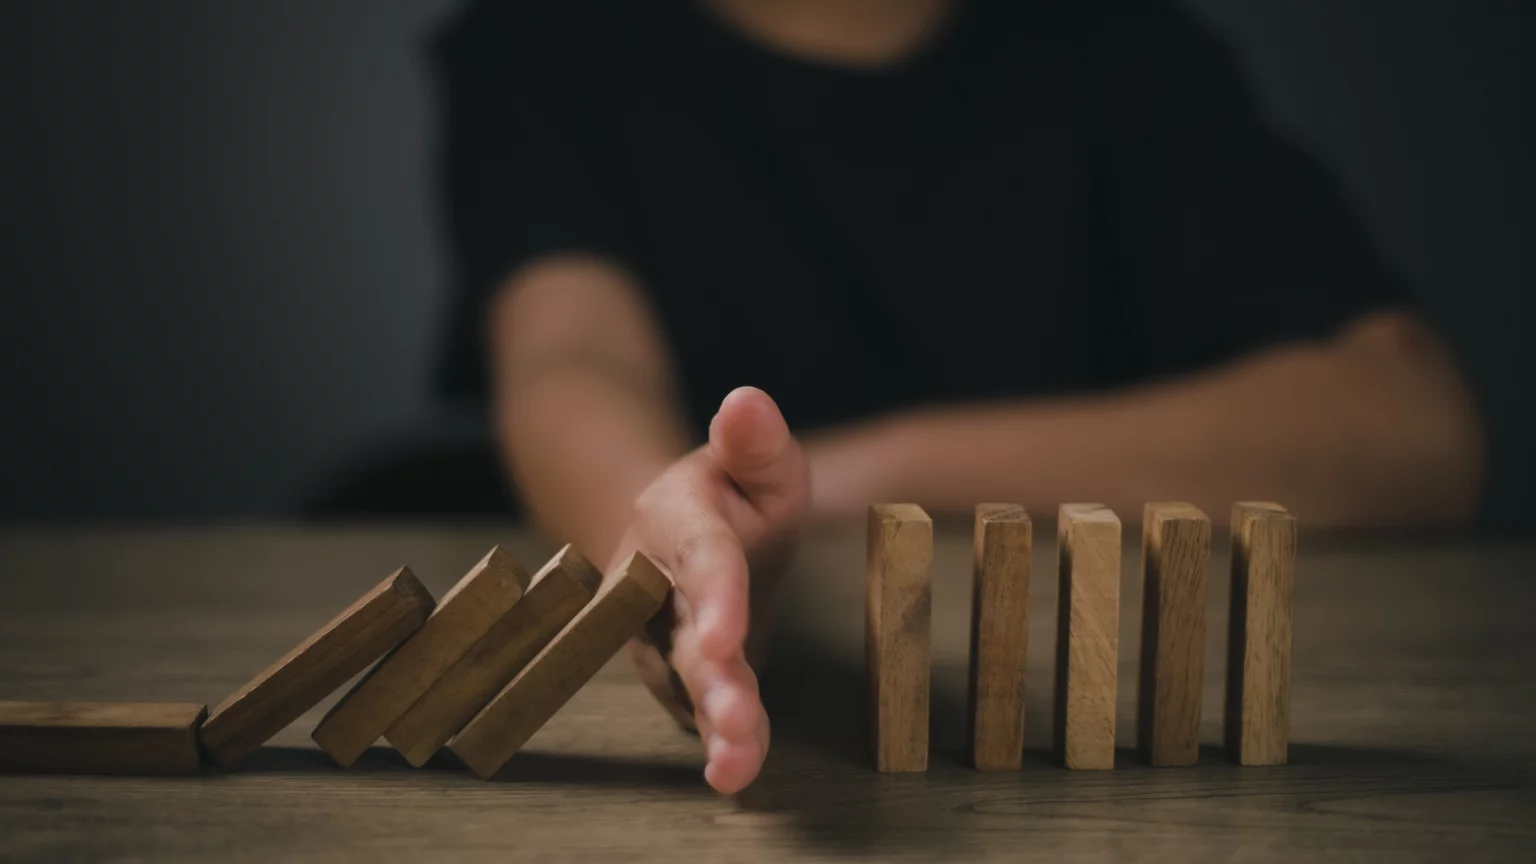 Une main d'adulte stoppant la chute de dominos en bois alignés sur une table, symbolisant la gestion du risque et la protection contre les effets en chaîne négatifs dans une ambiance sombre et sérieuse.